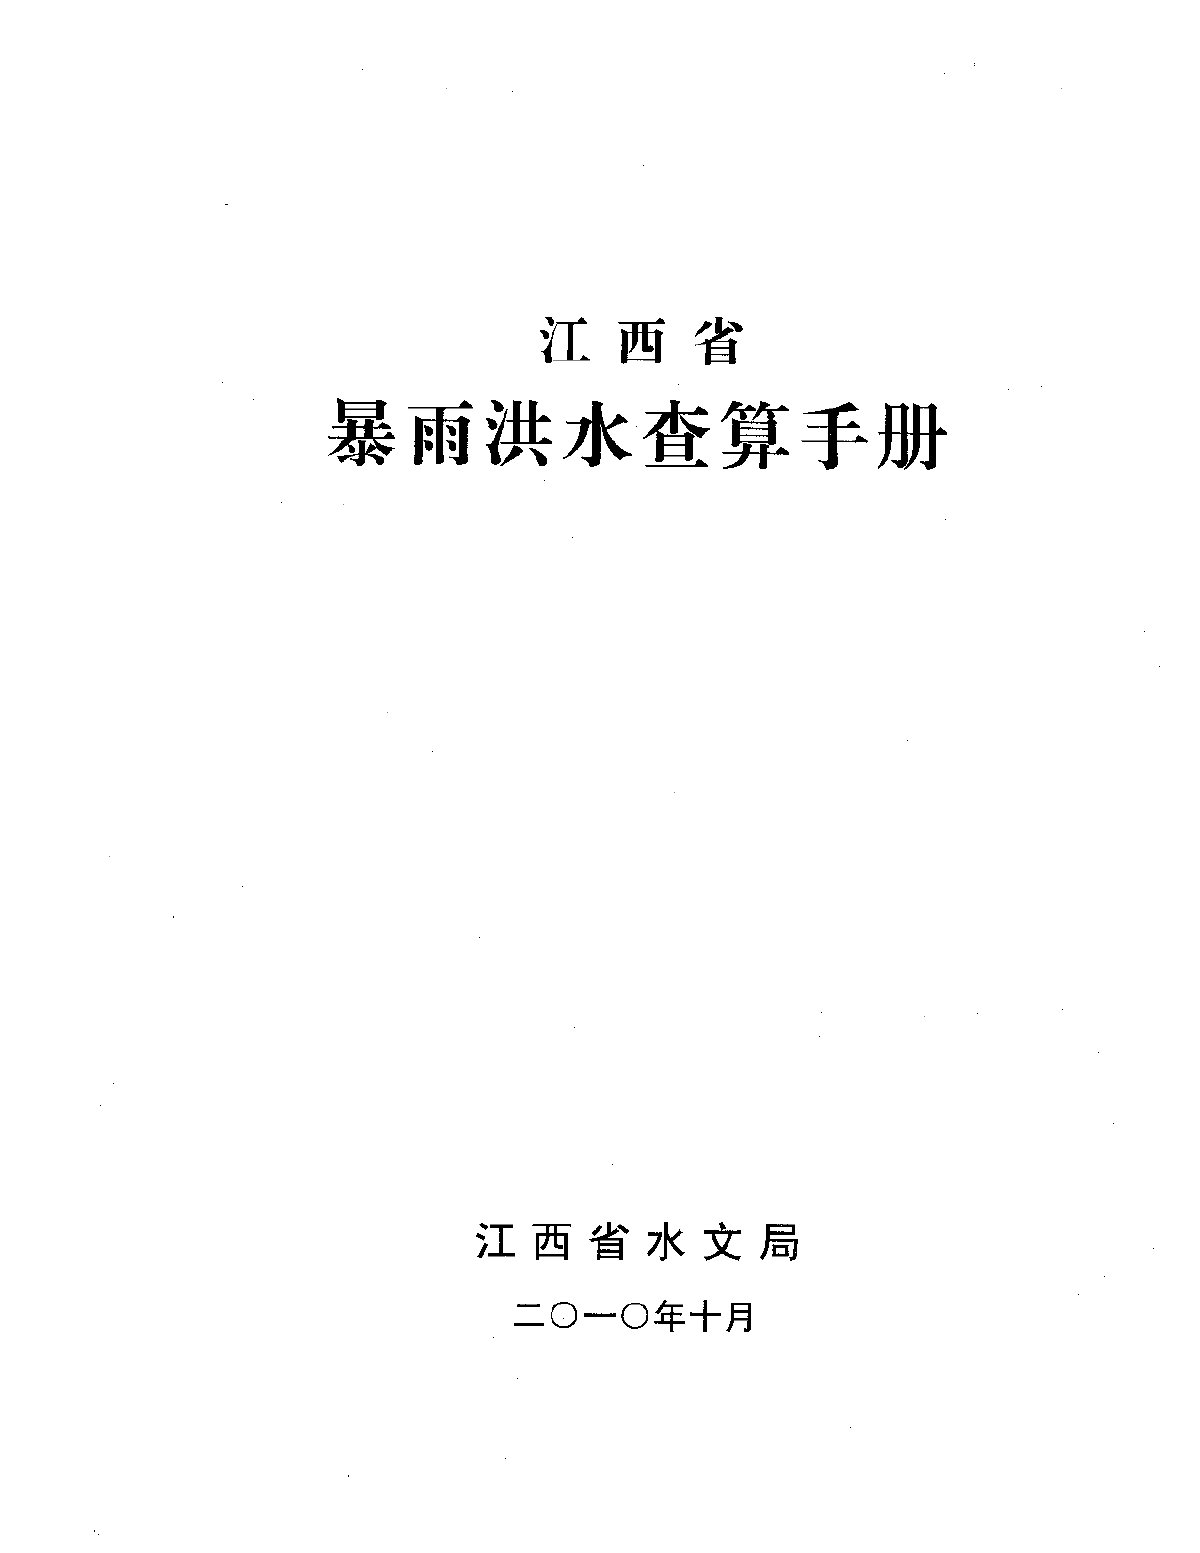 江西省暴雨洪水查算手册2010年版